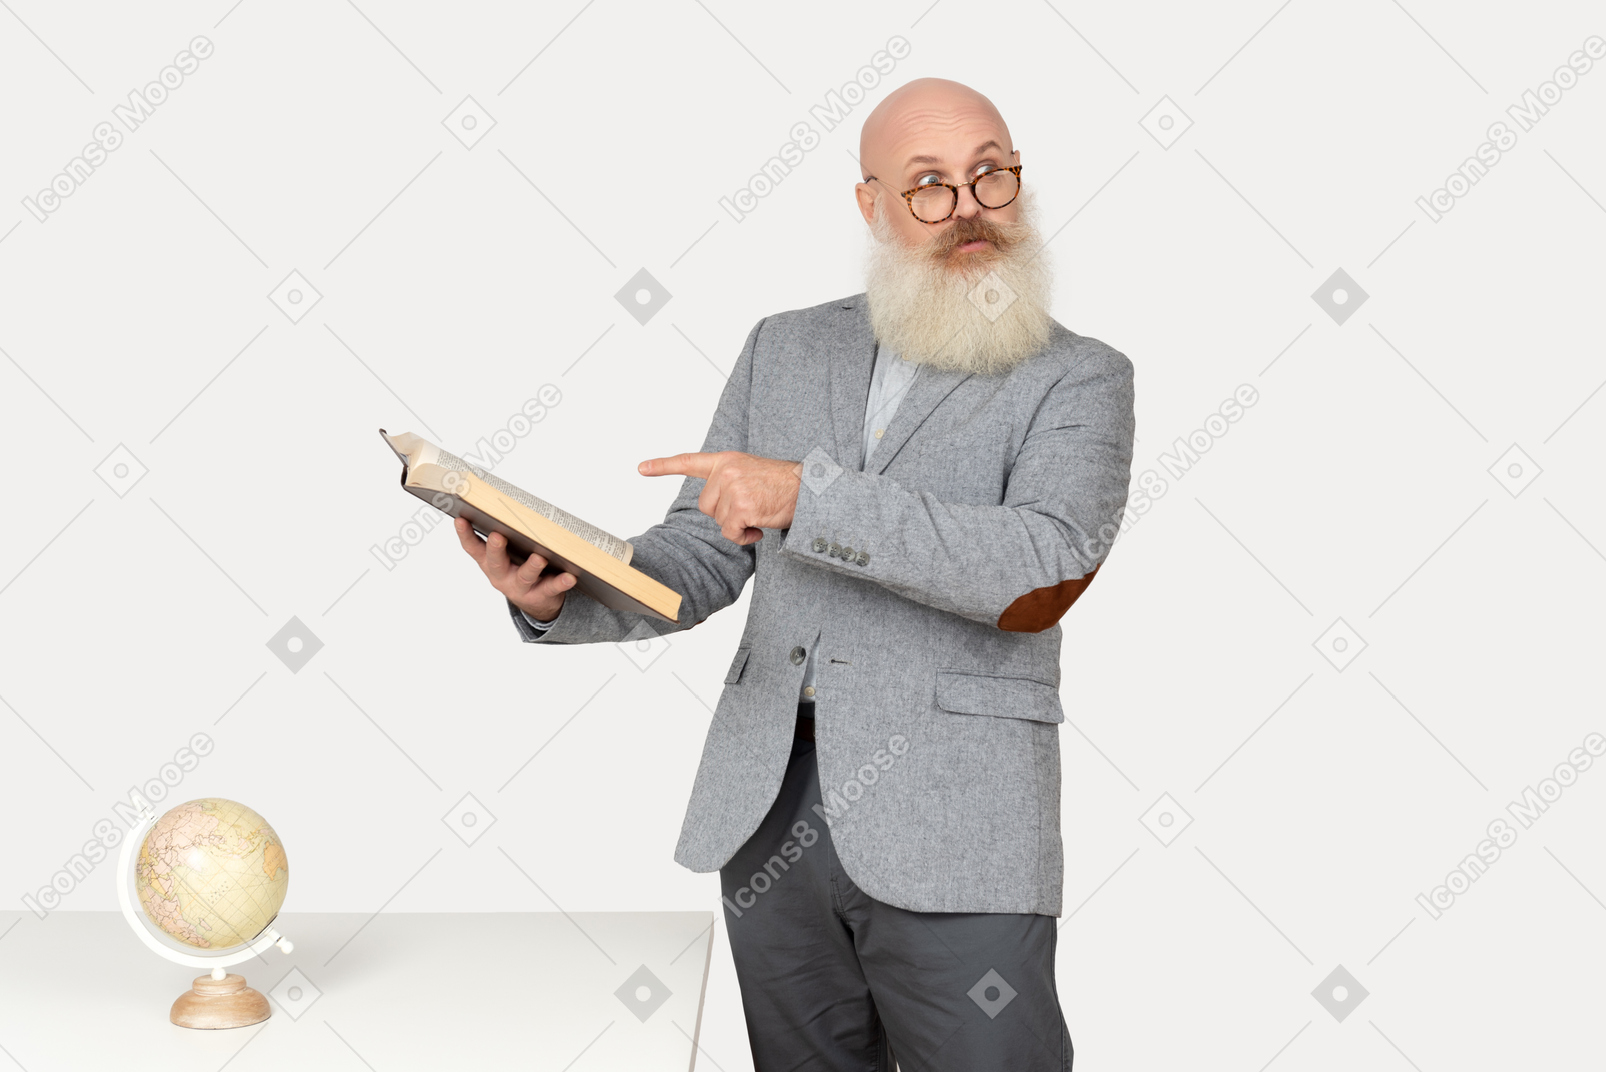 Der alte professor hält ein buch in der hand und scheint mit jemandem zu reden